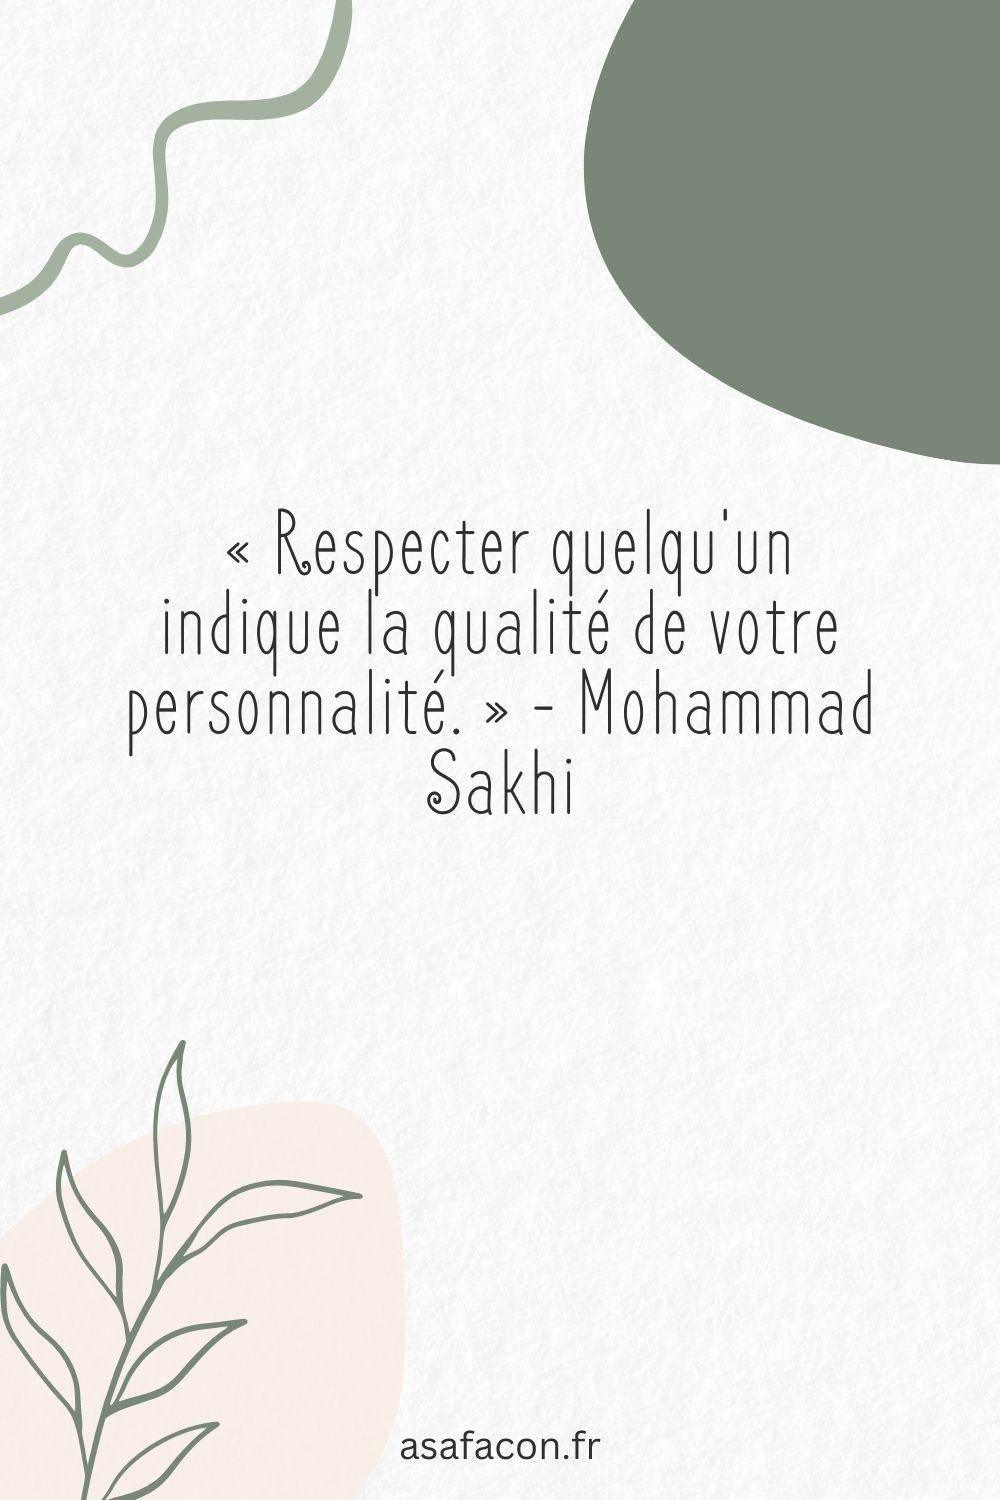 « Respecter quelqu'un indique la qualité de votre personnalité. » - Mohammad Sakhi